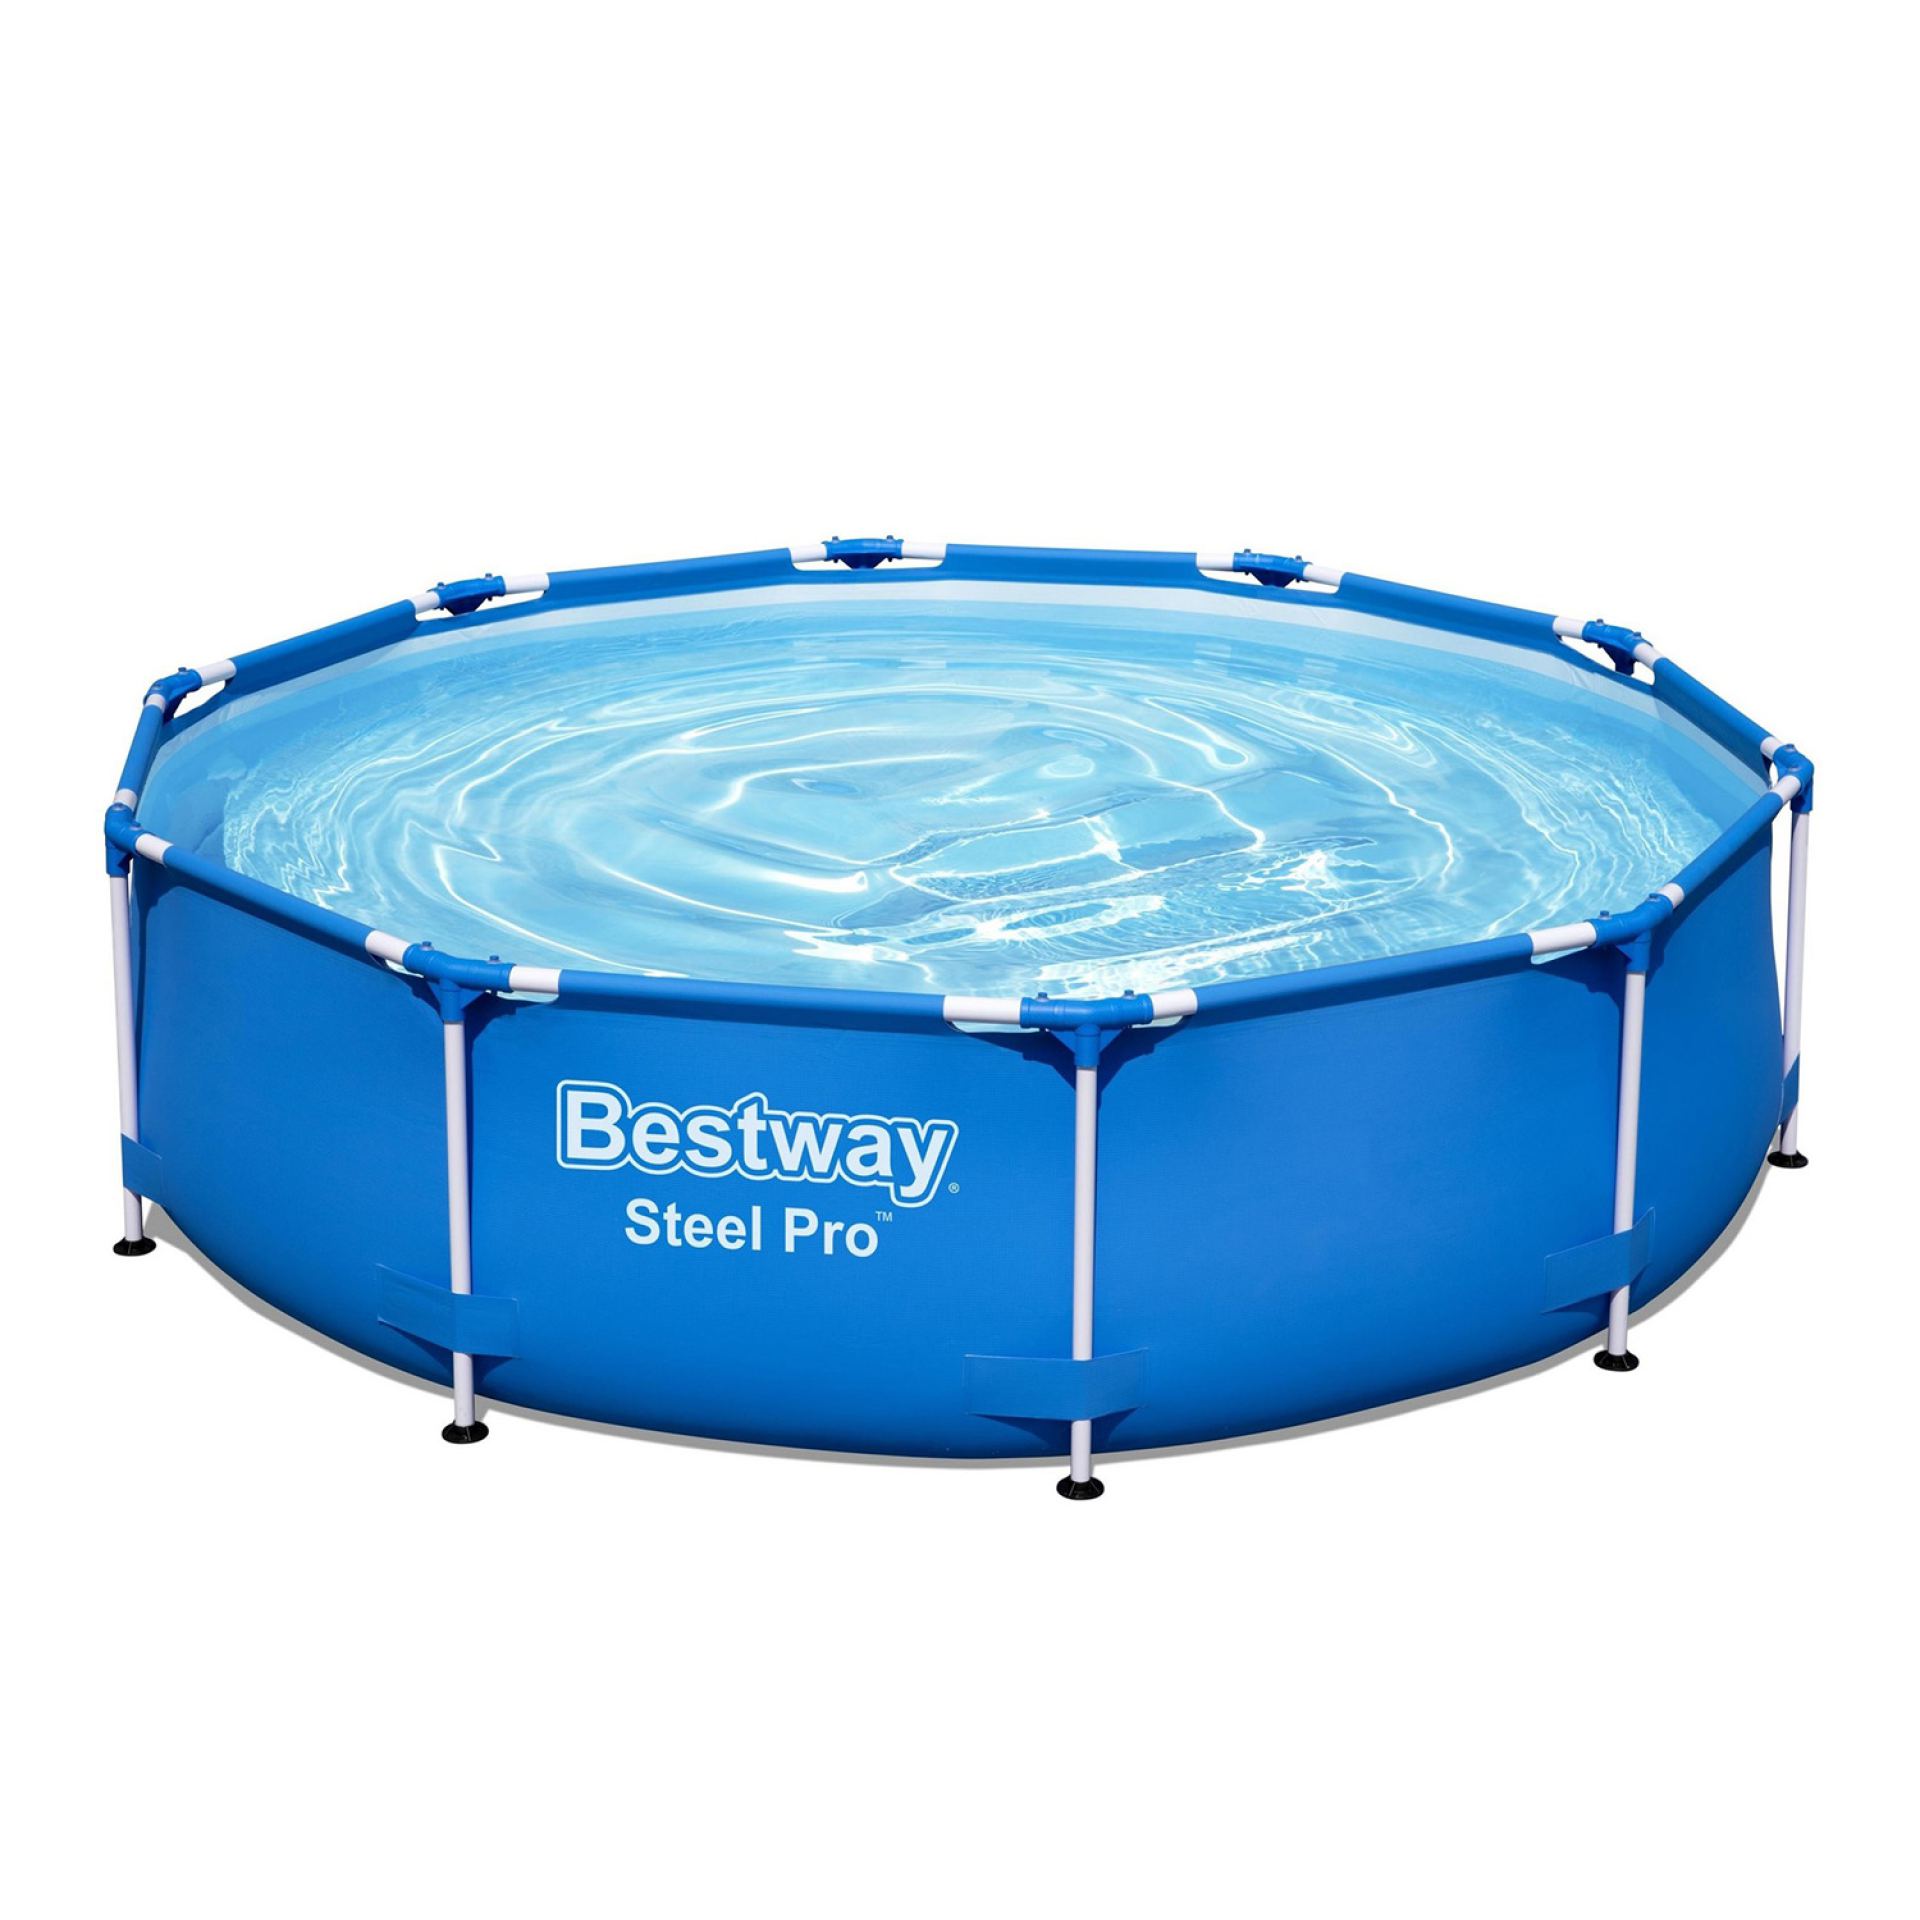 Bestway zwembad steel pro 305cm x 76cm